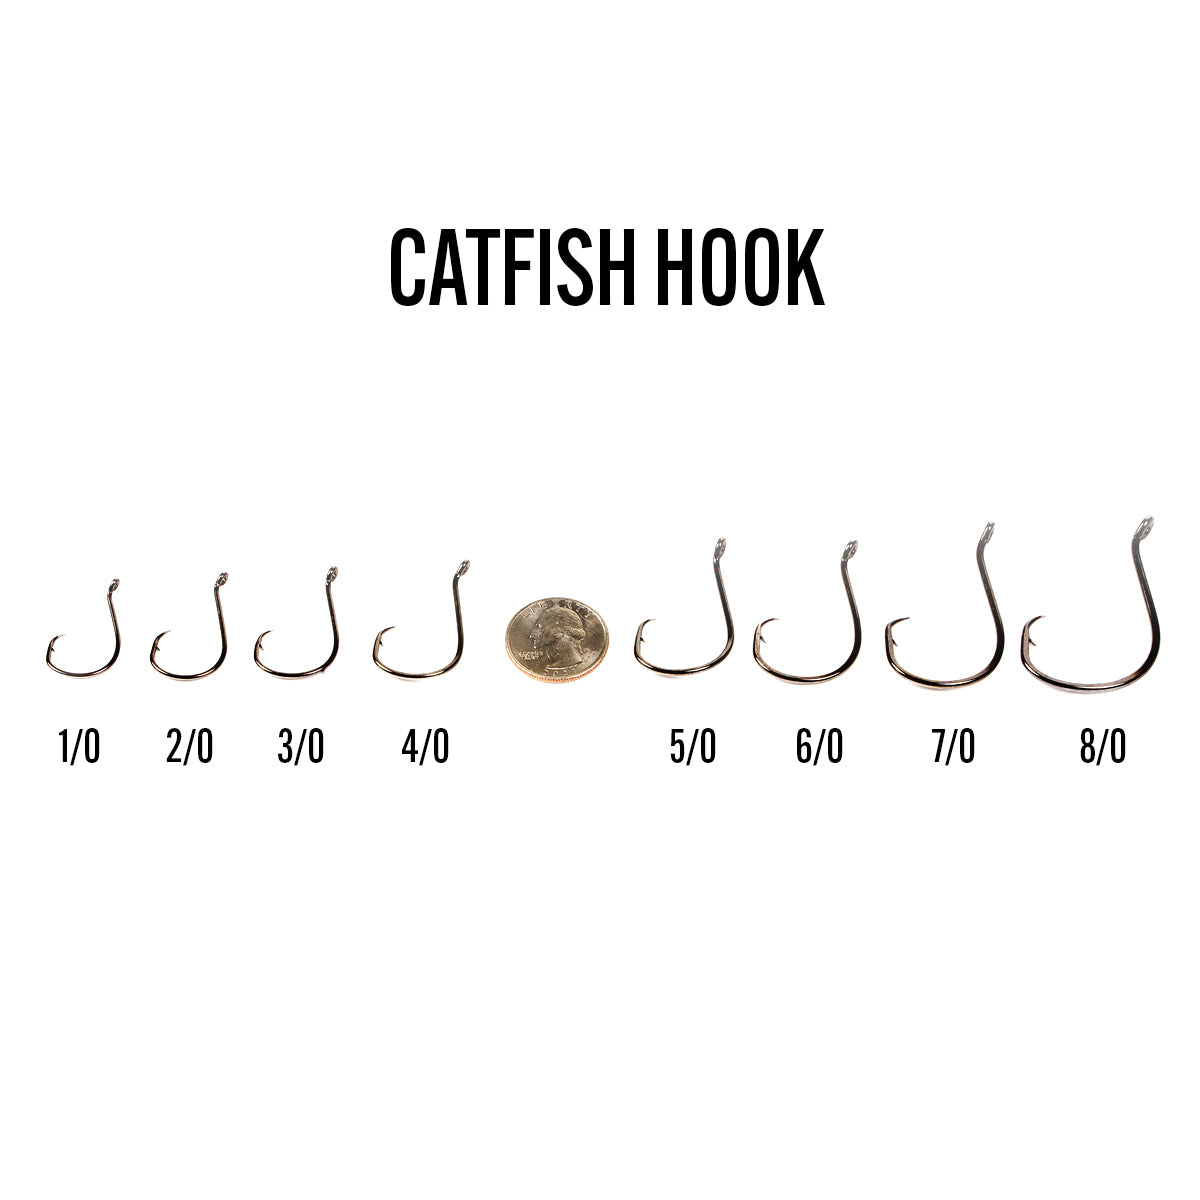 8/0 Catfish Hooks